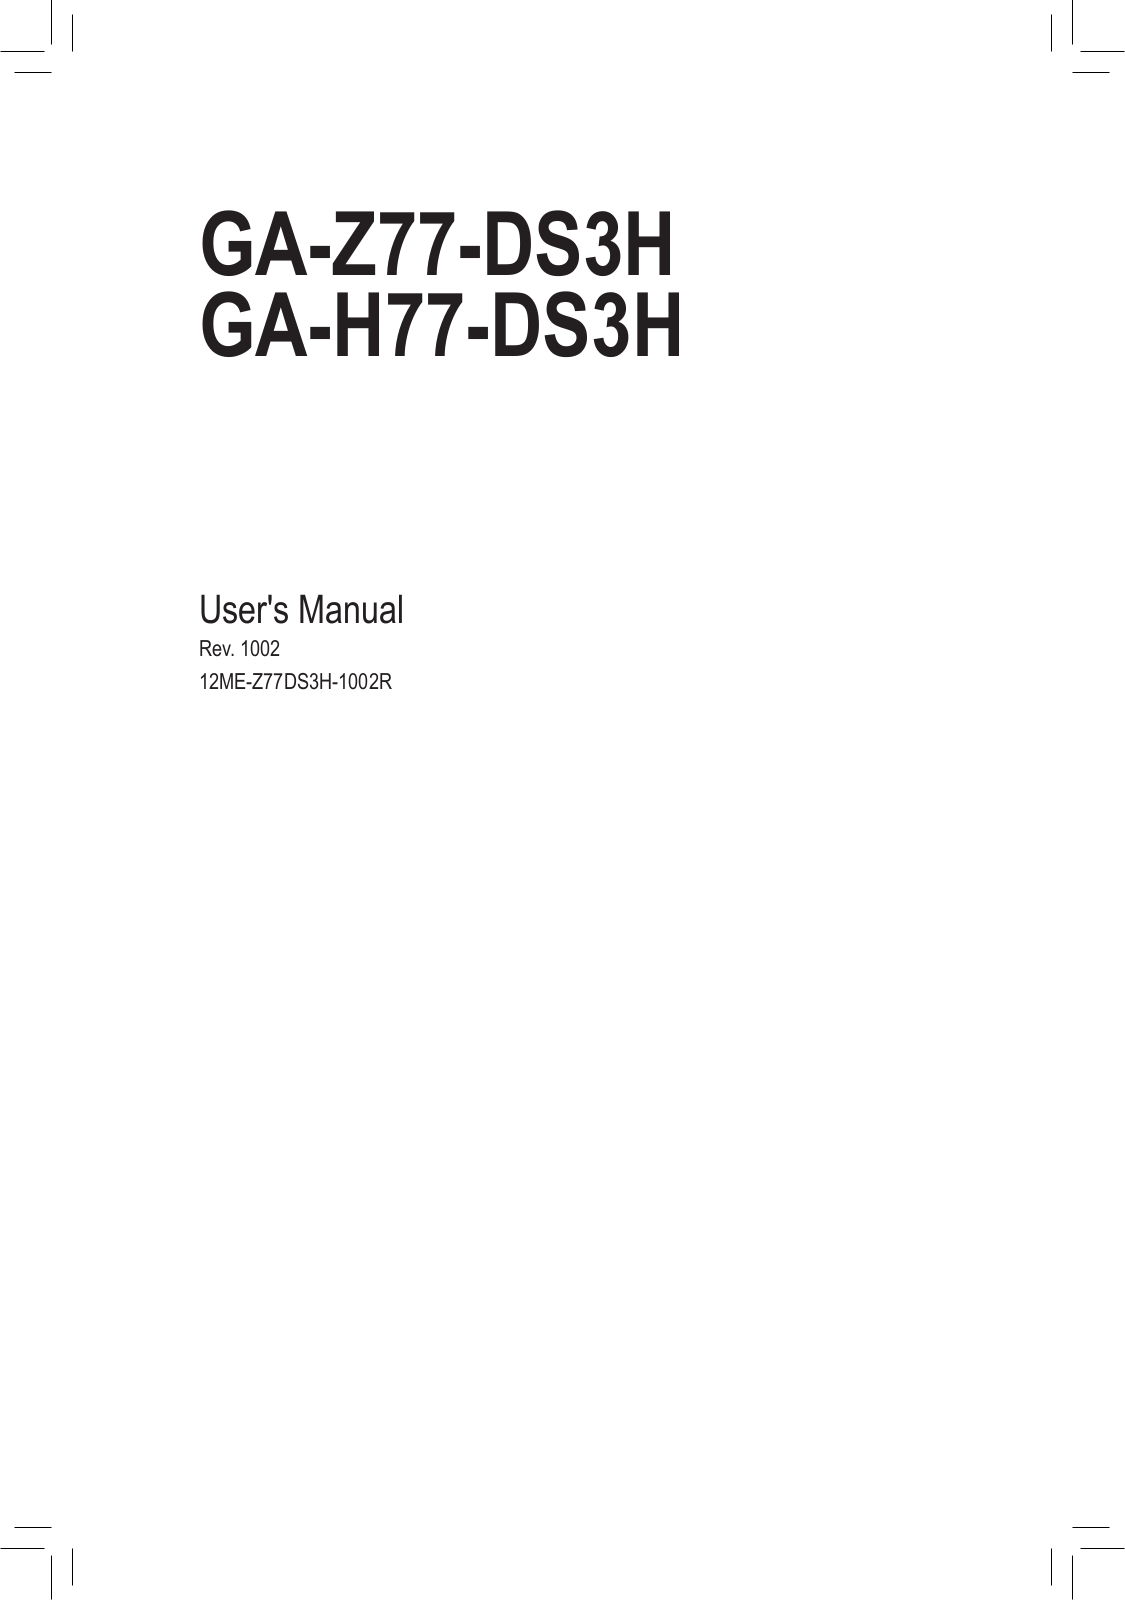 GIGABYTE GA-Z77-DS3H, GA-H77-DS3H User Guide